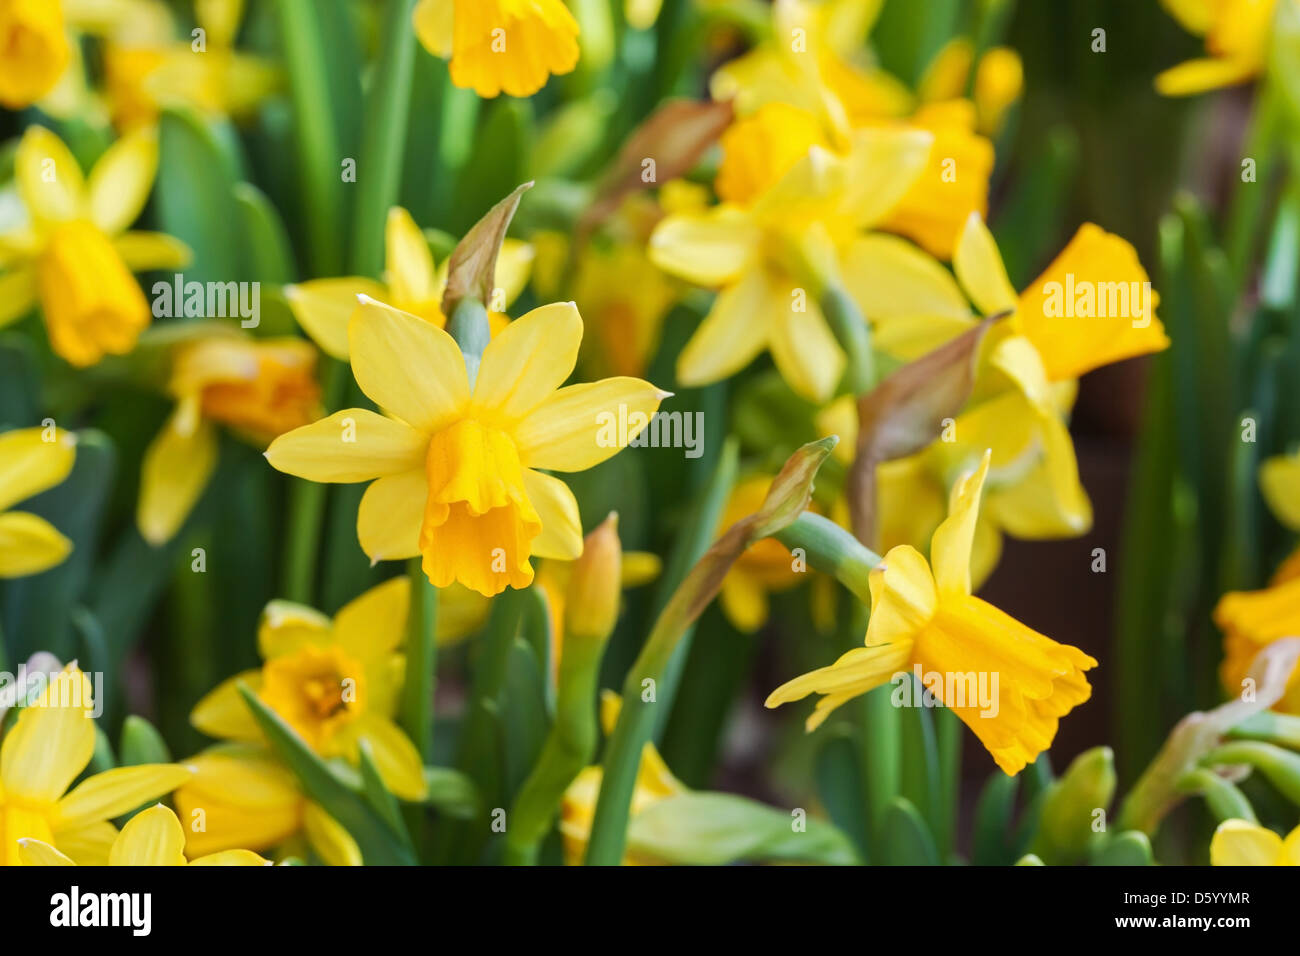 Leuchtend gelbe Narzisse Blumen im Frühlingsgarten Stockfoto